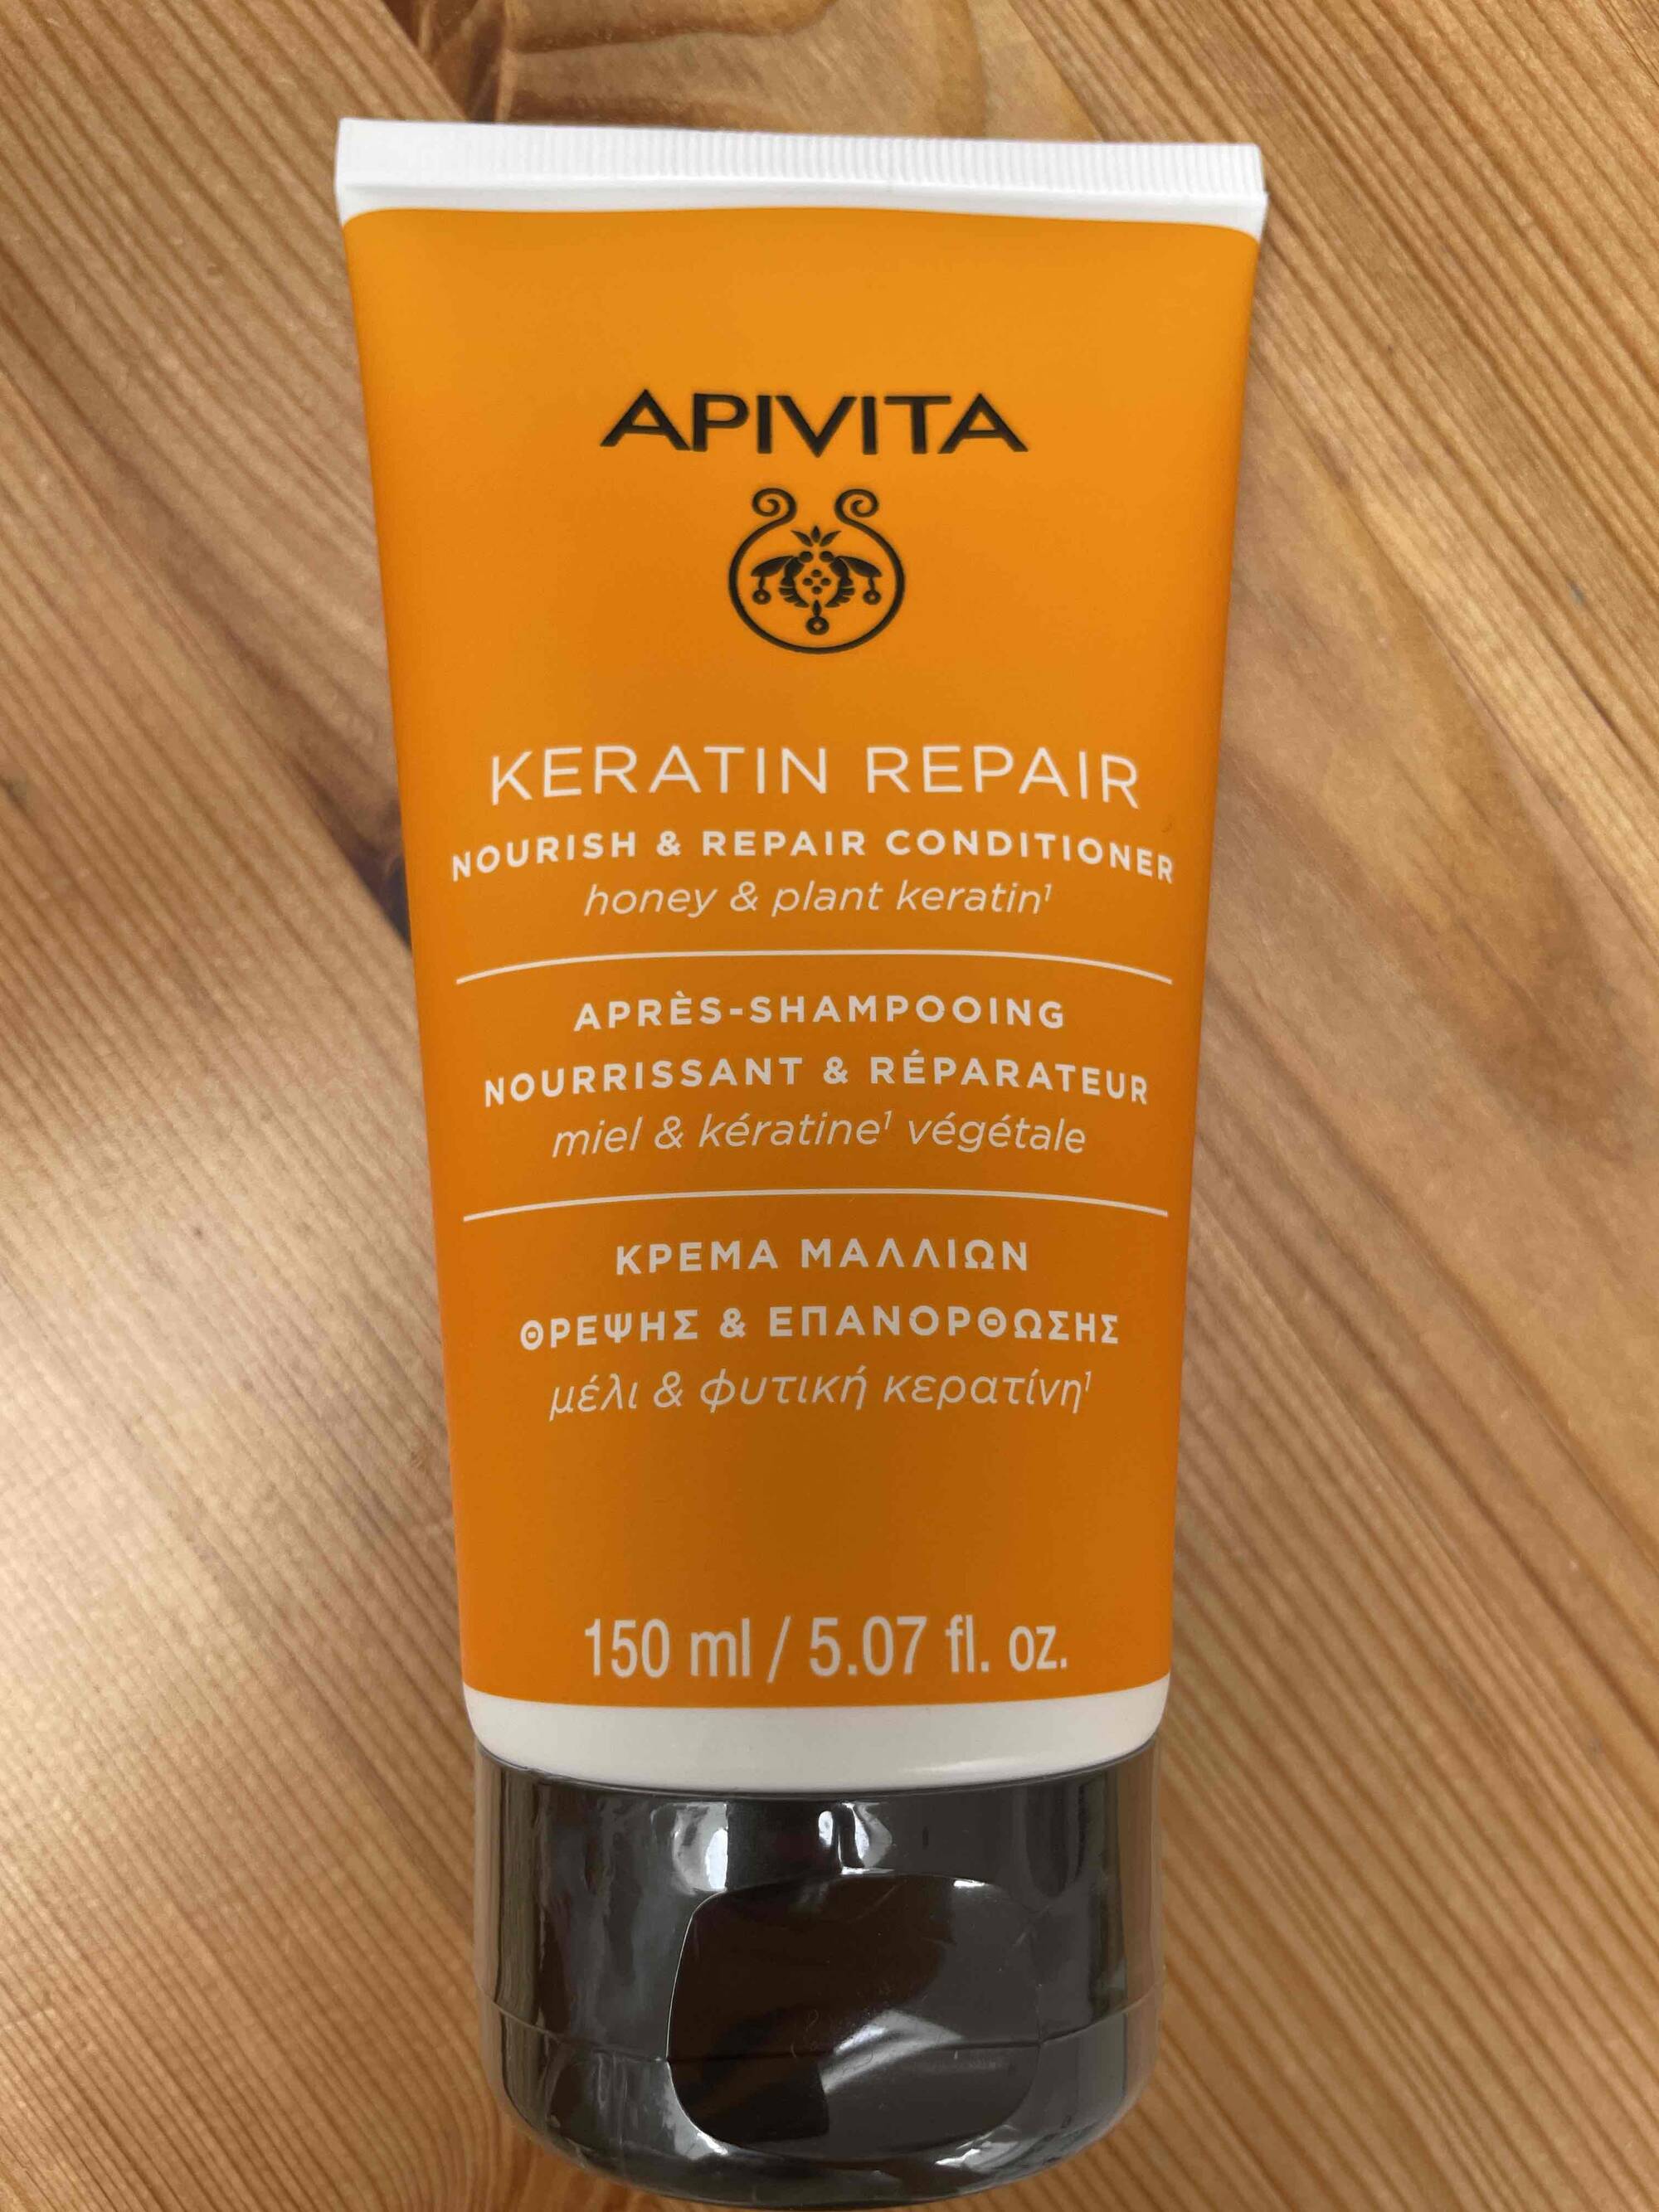 APIVITA - Keratin repair - Après-shampooing 